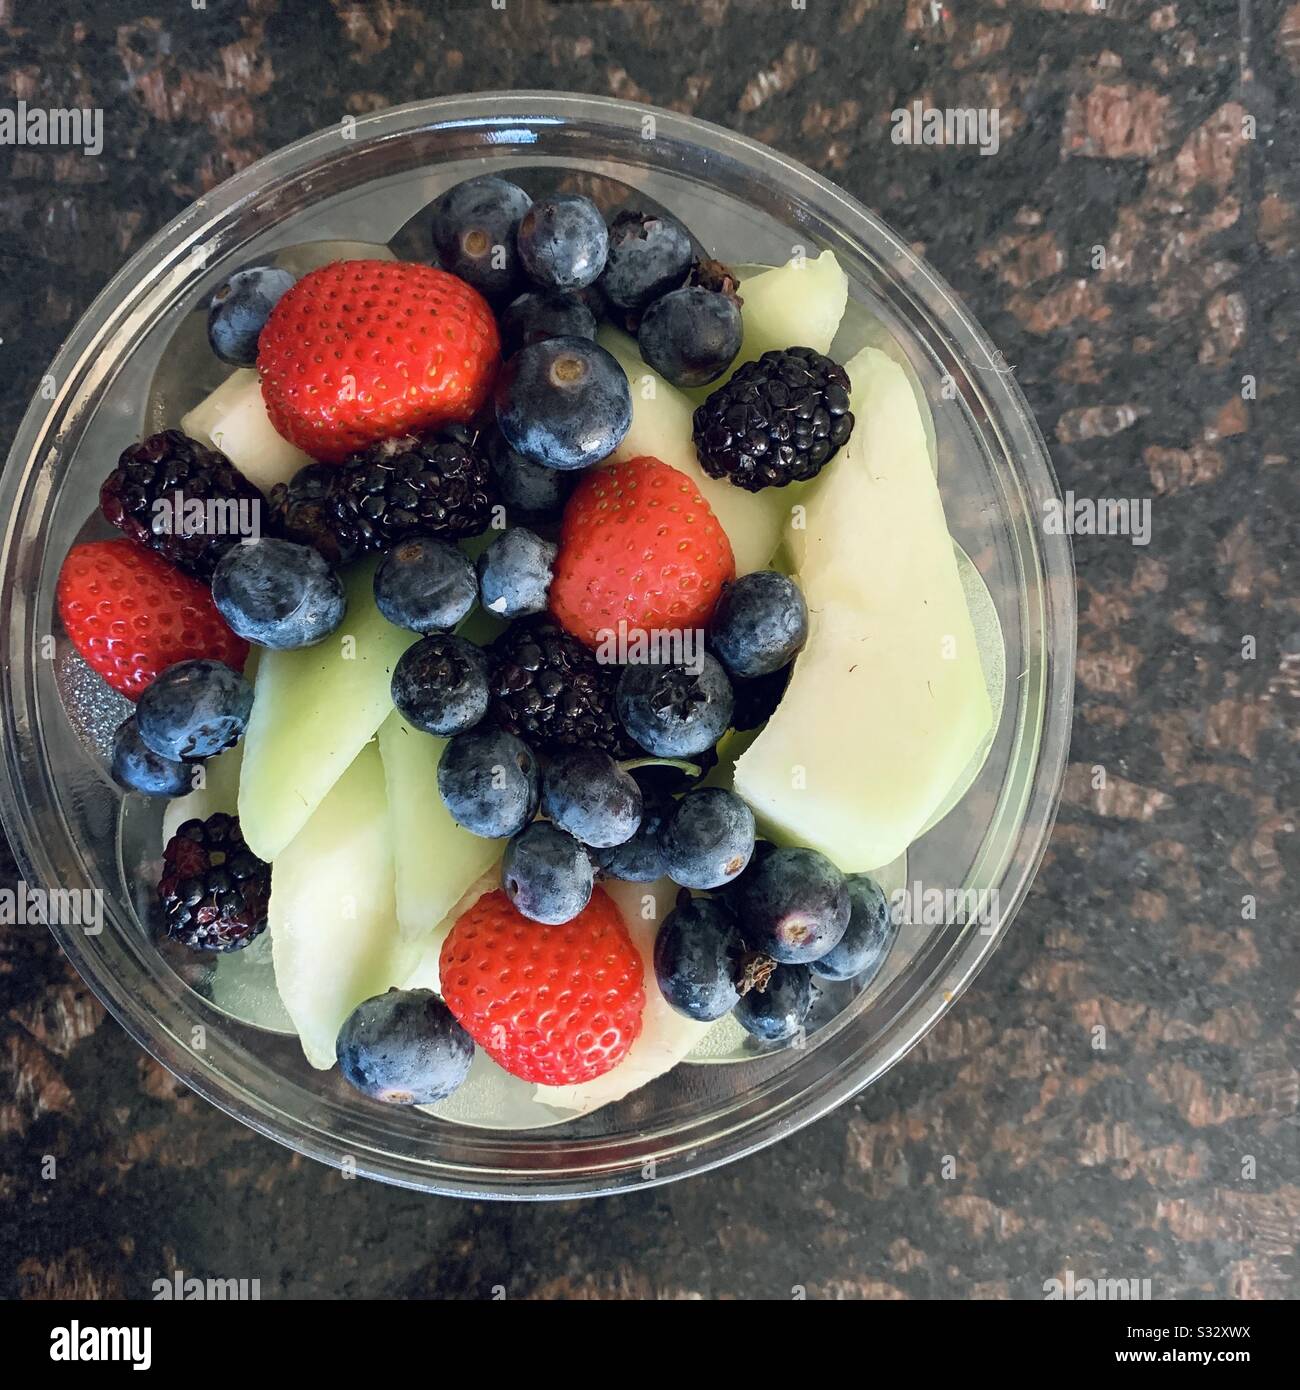 Un bol de fruits frais sains et délicieux, de miel, de fraises, de bleuets et de framboises. Banque D'Images